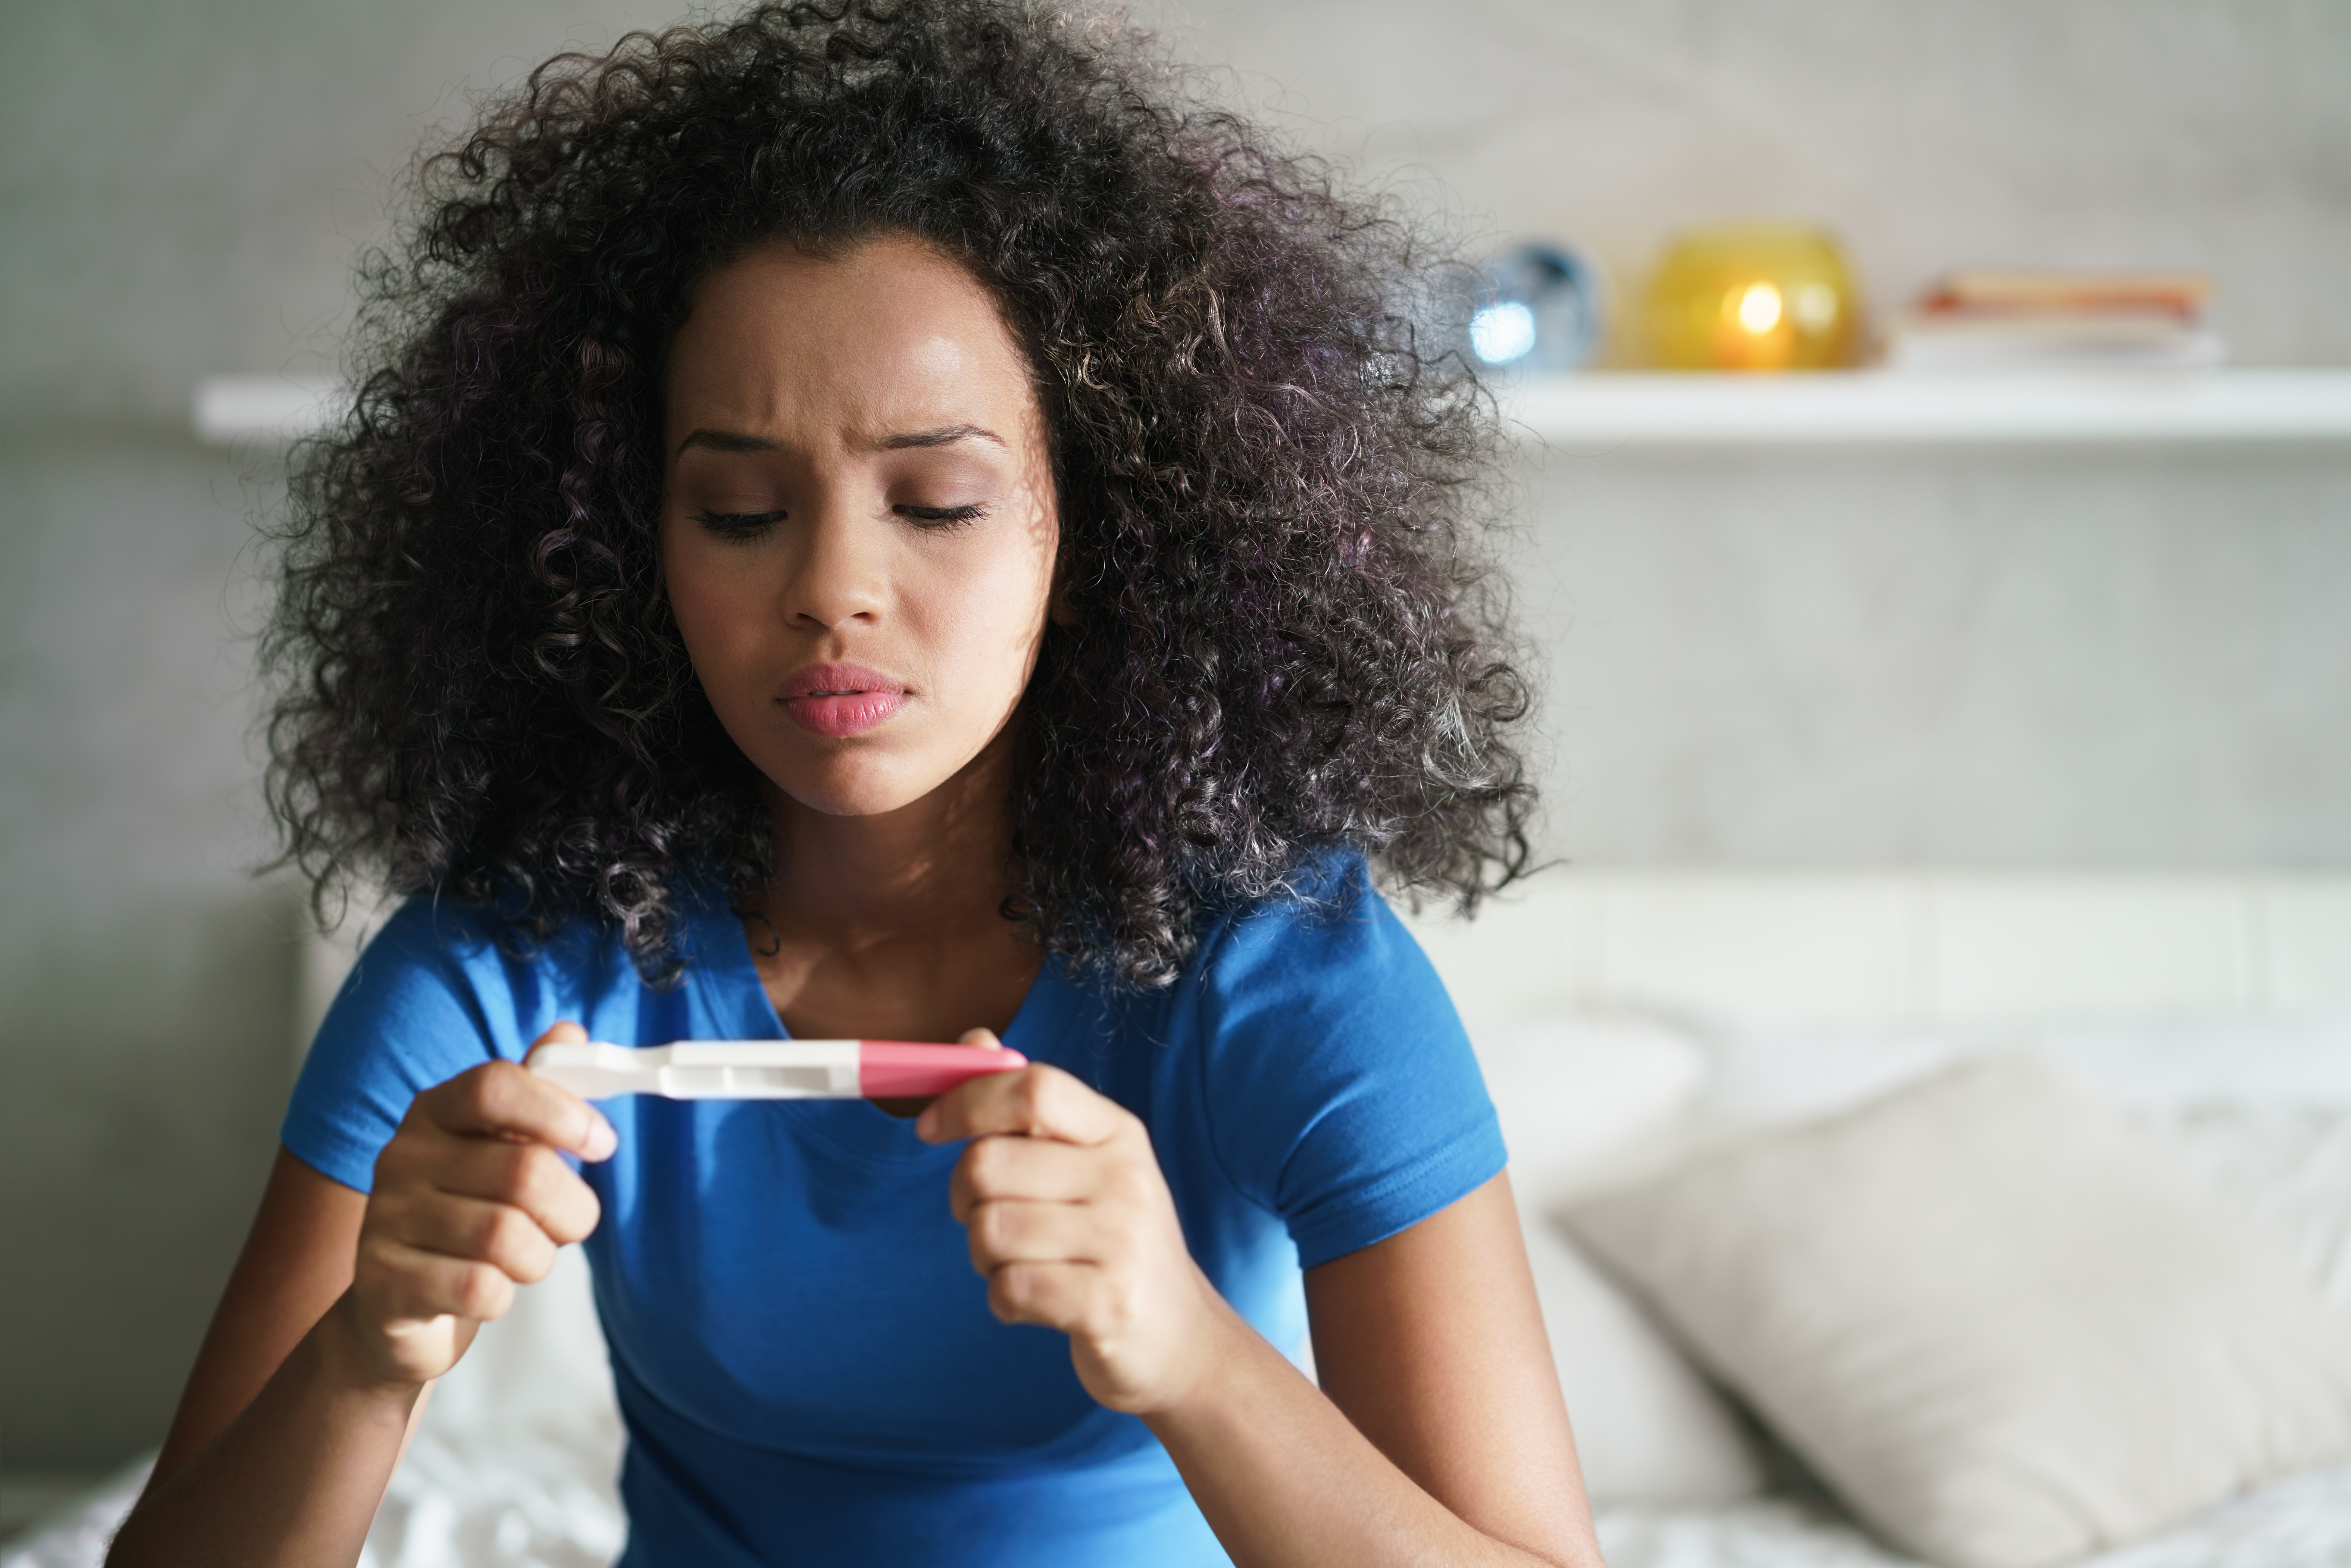 Chica con prueba de embarazo en su habitación | Fuente: Shutterstock.com